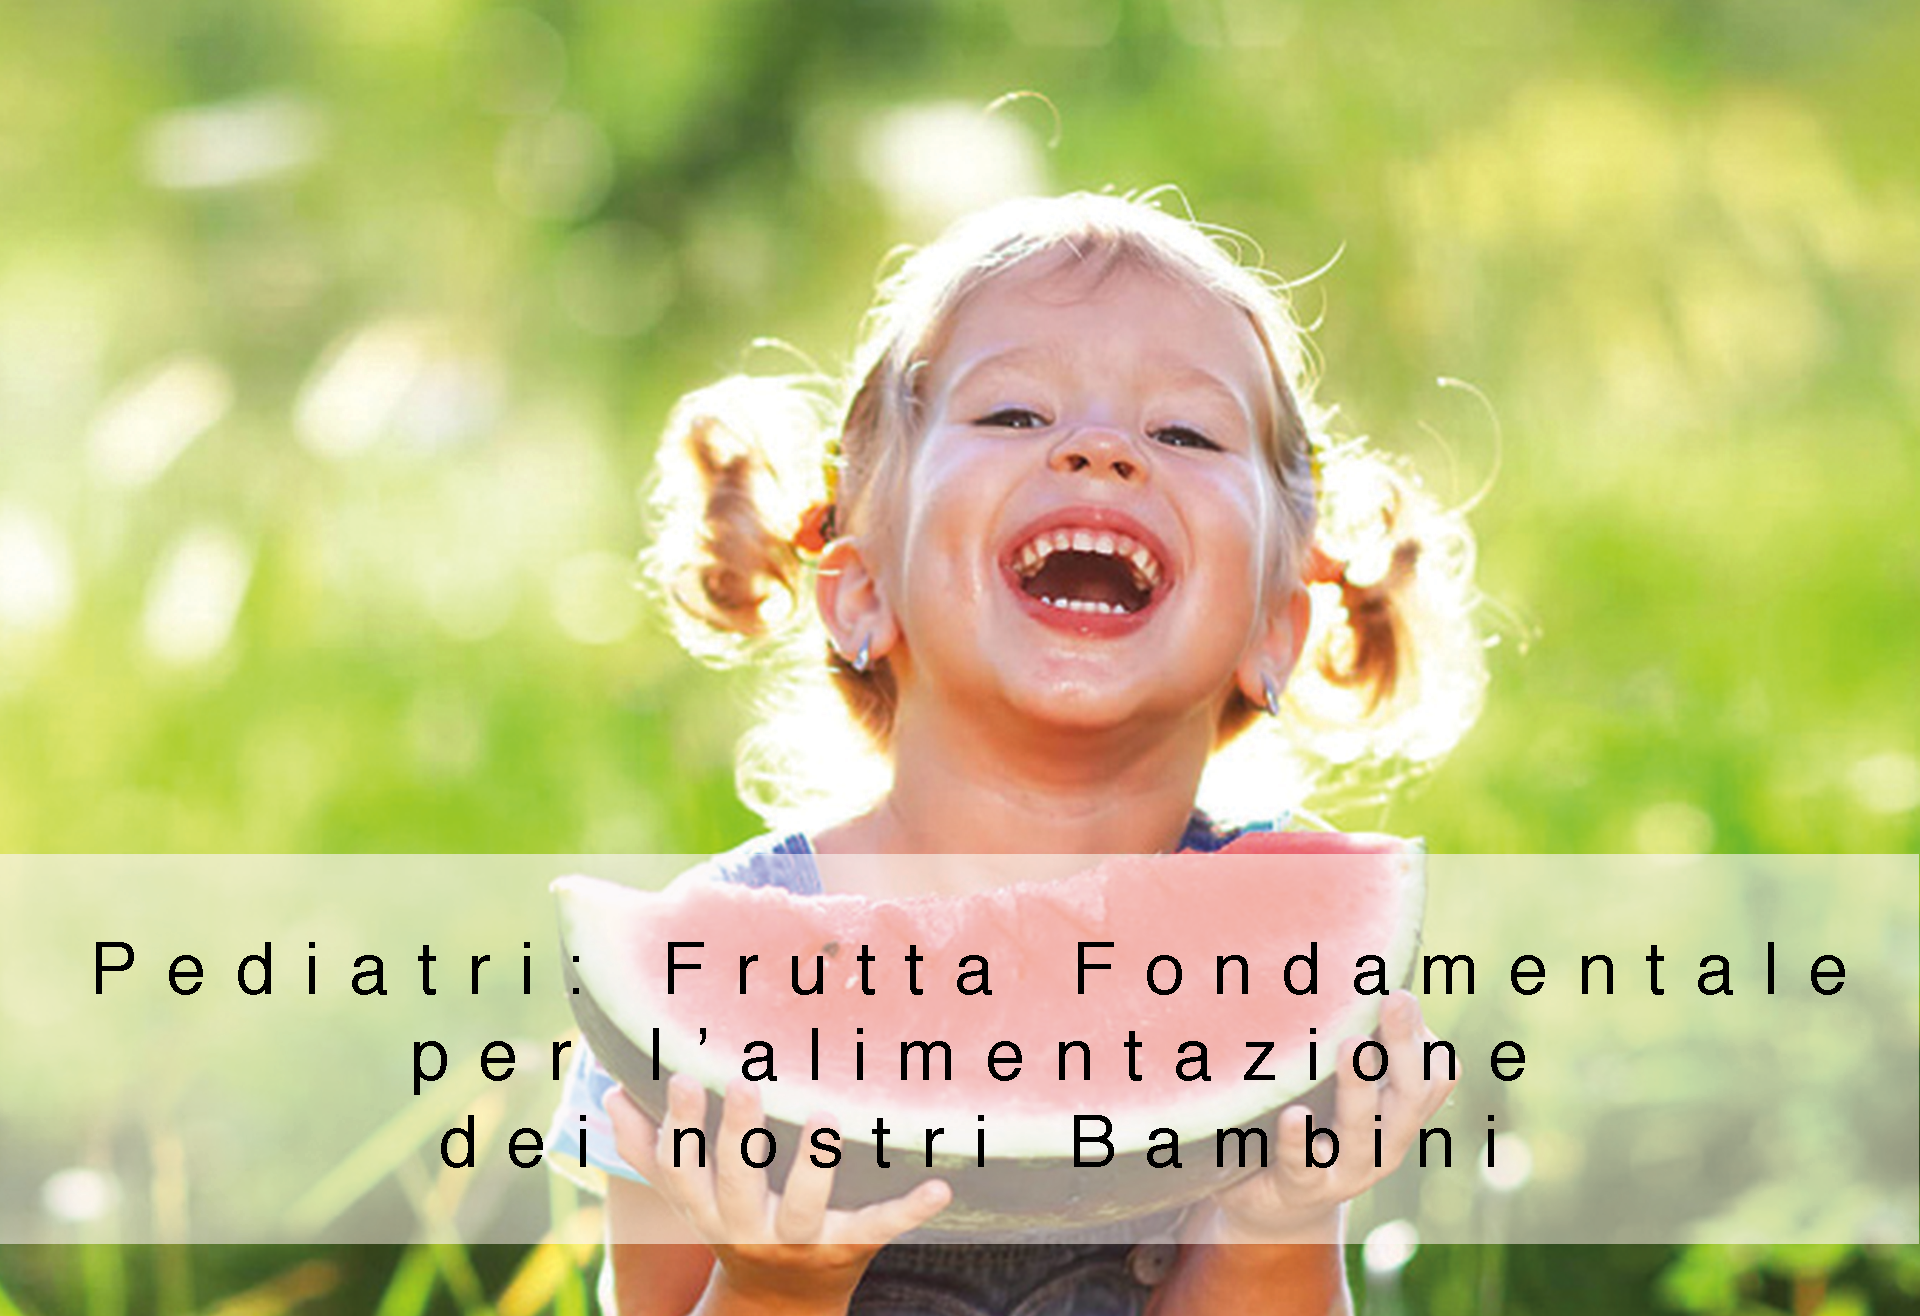 Pediatri: Frutta Fondamentale per l’alimentazione dei nostri Bambini